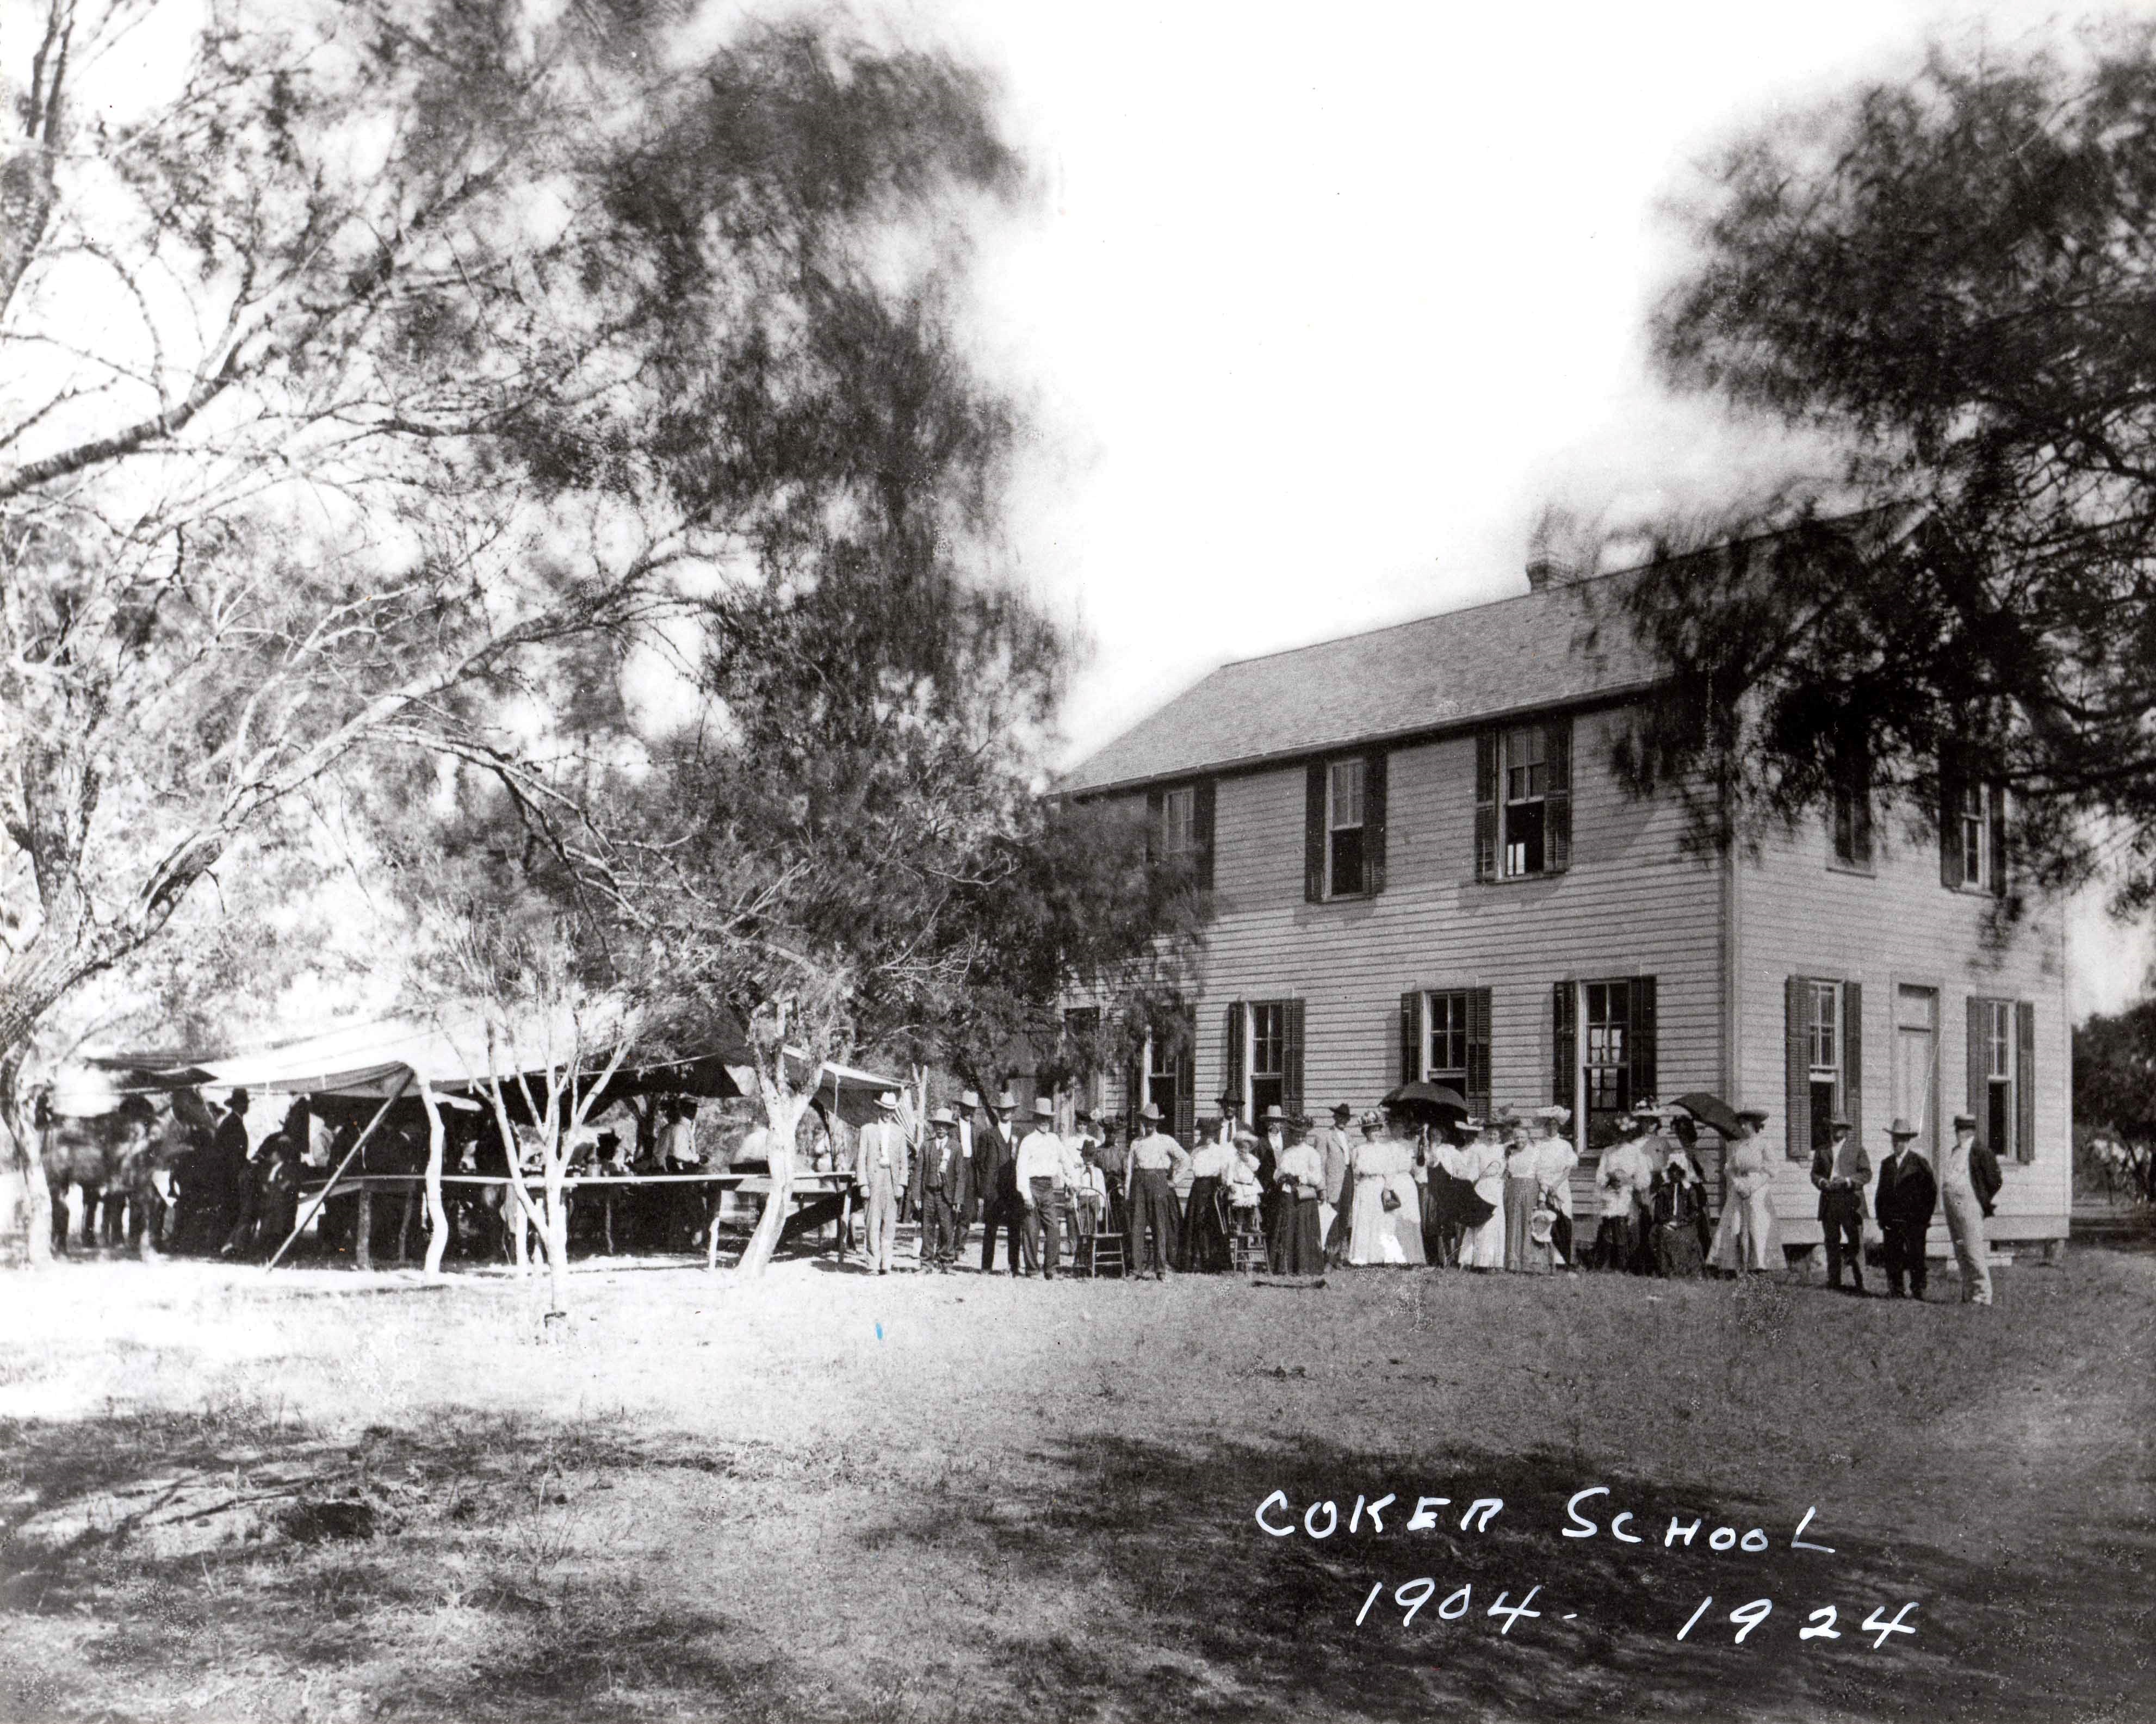 Coker School - second building